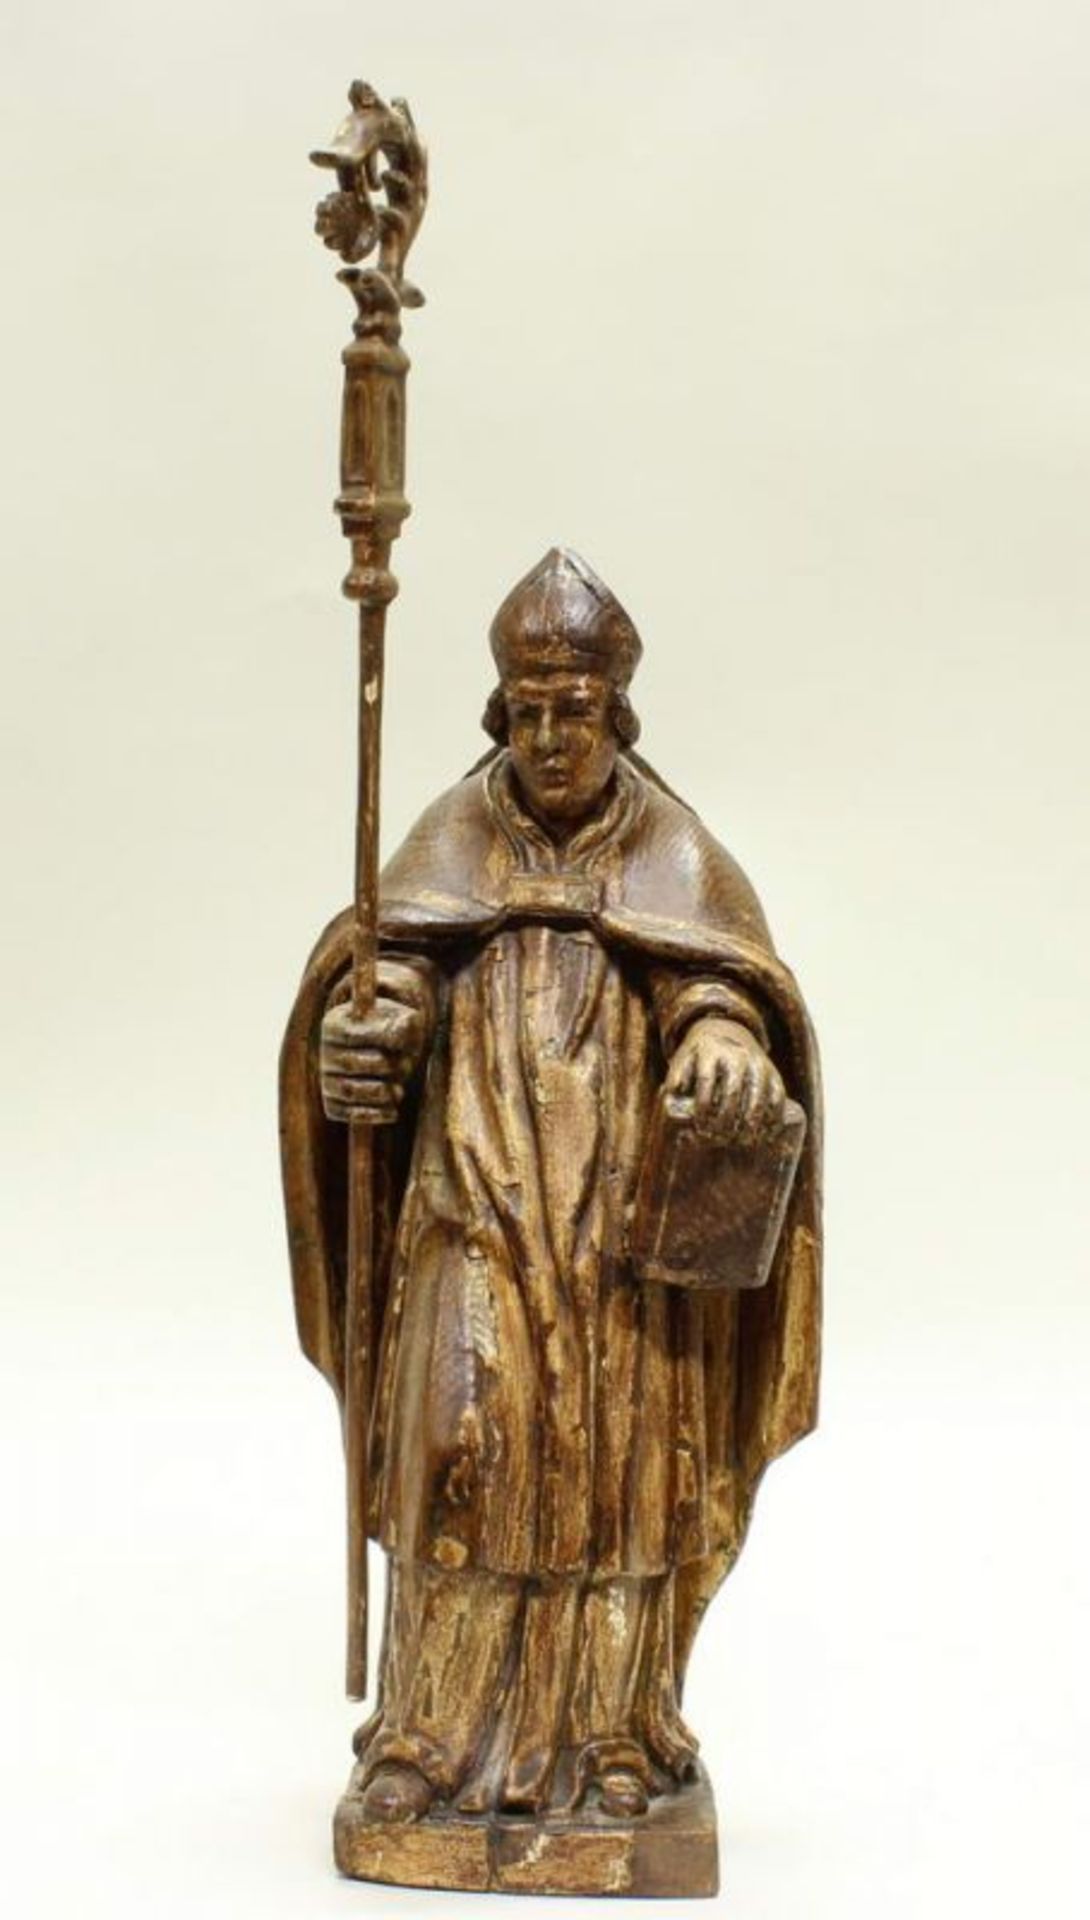 2 kleine Skulpturen, Holz geschnitzt, "Heilige Bischöfe", 34 cm bzw. 36 cm hoch, 18./19 Jh., - Image 5 of 7